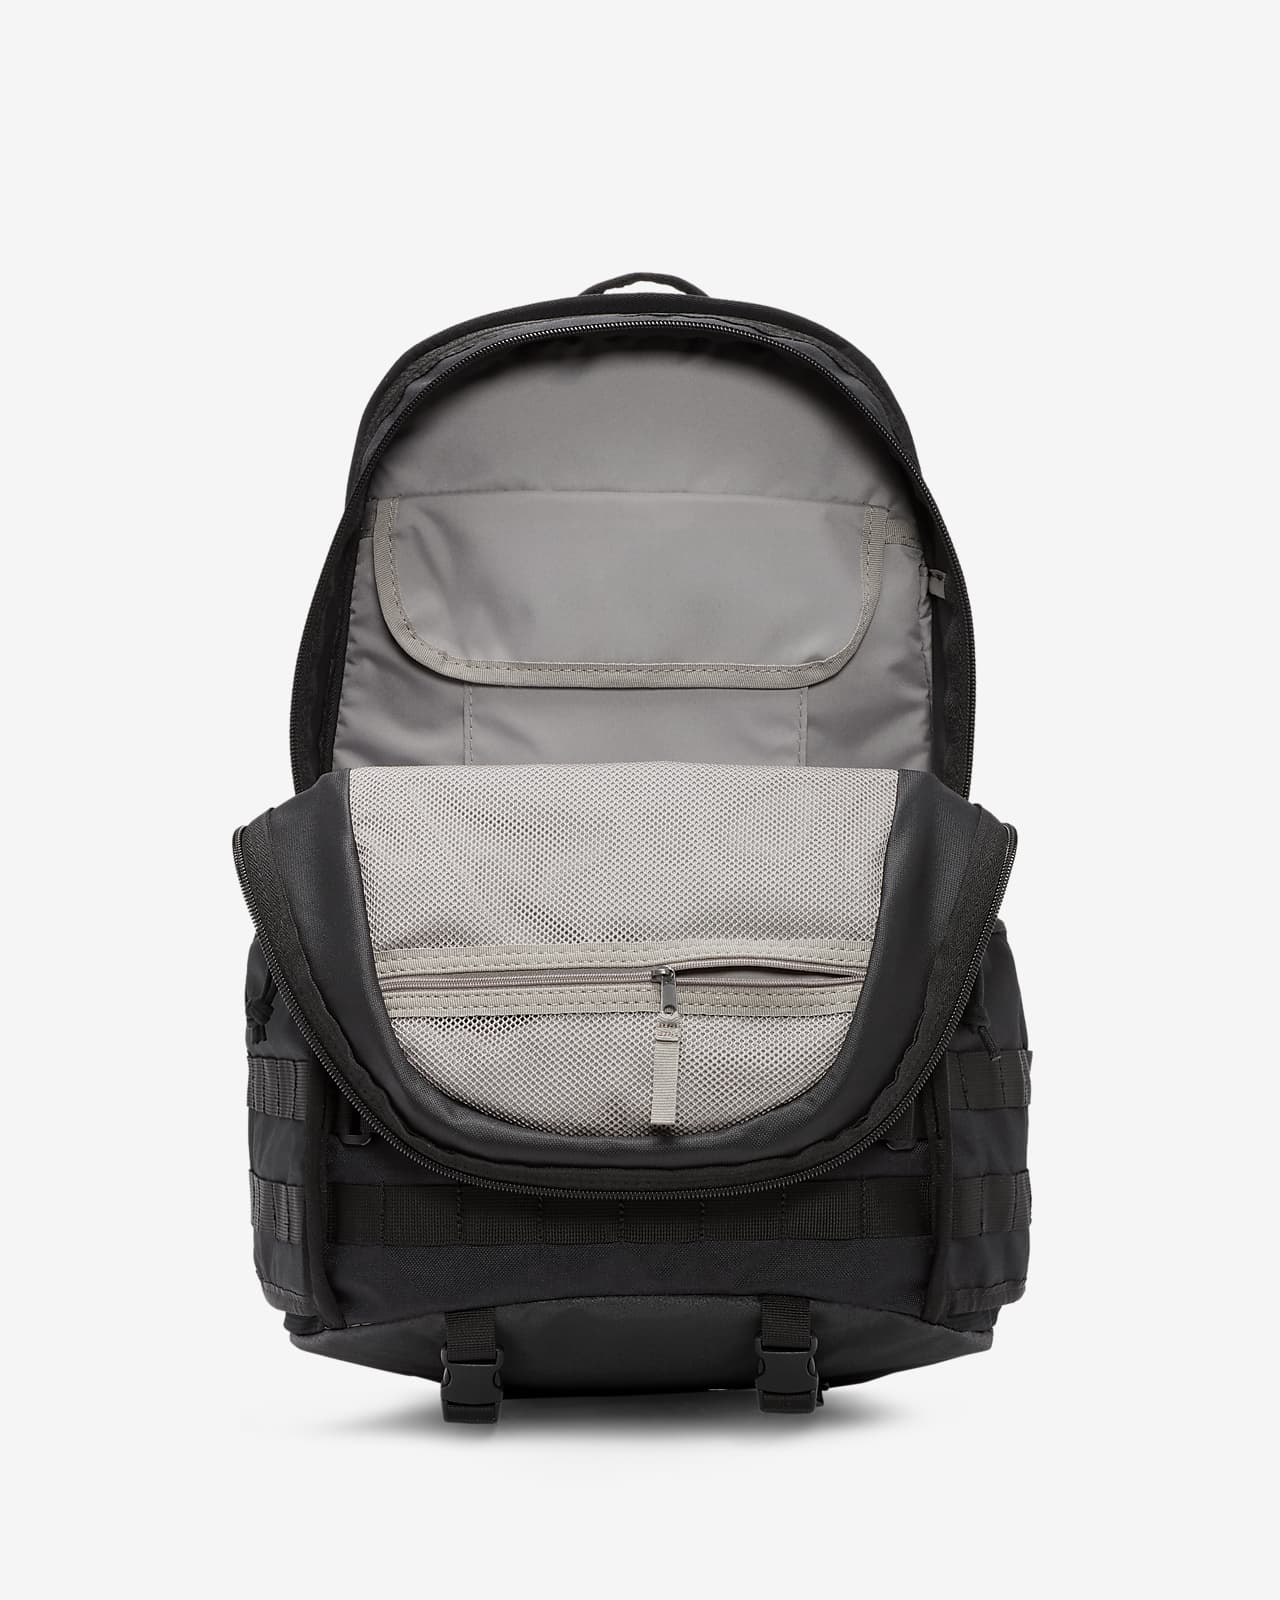 nike rpm backpack black